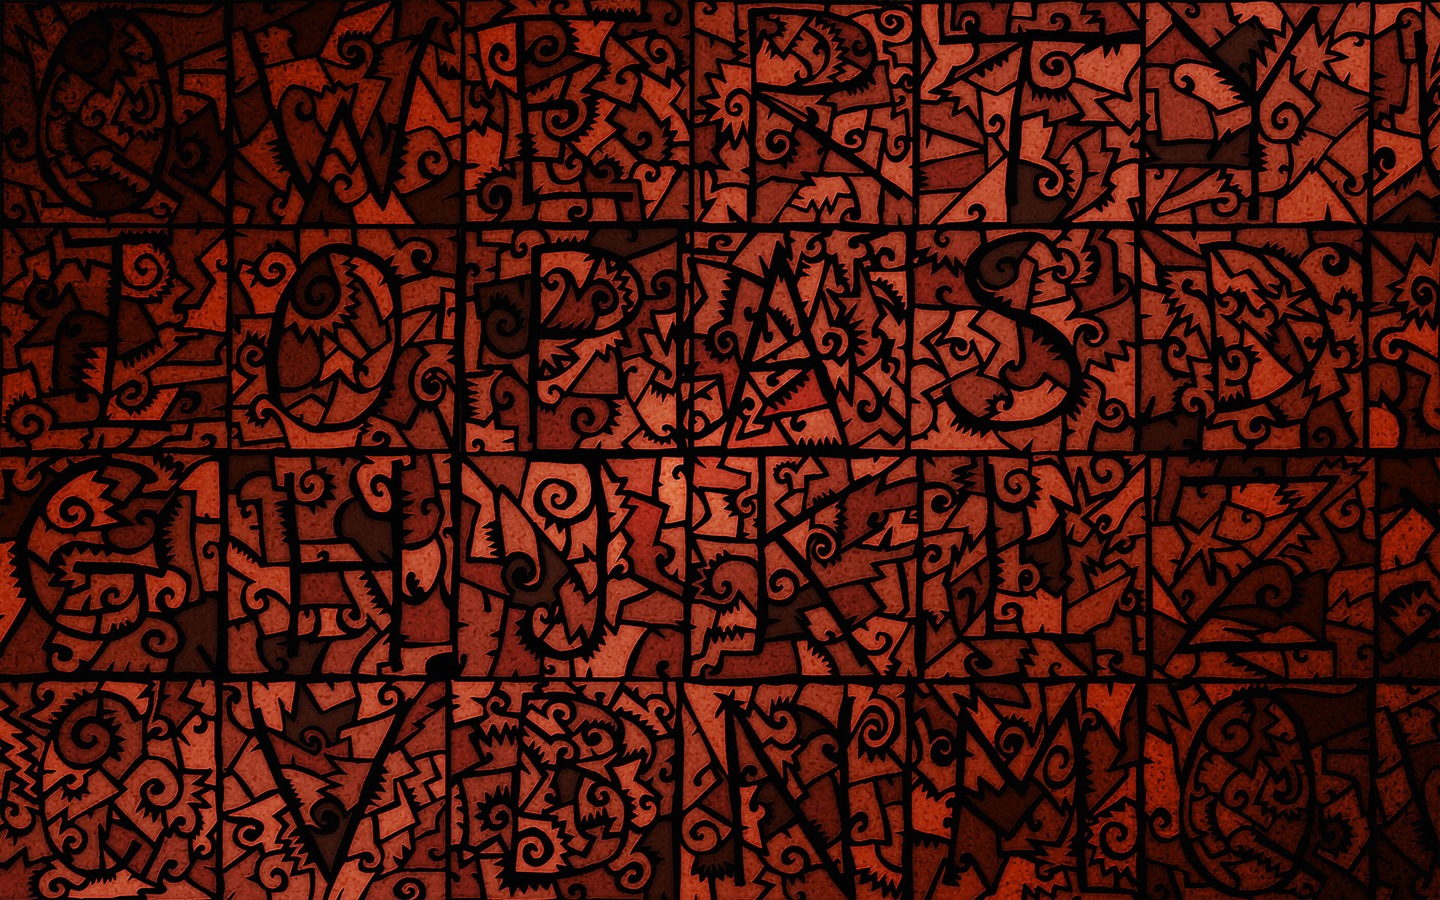 Vladstudio 壁纸专辑(十)14 - 1440x900